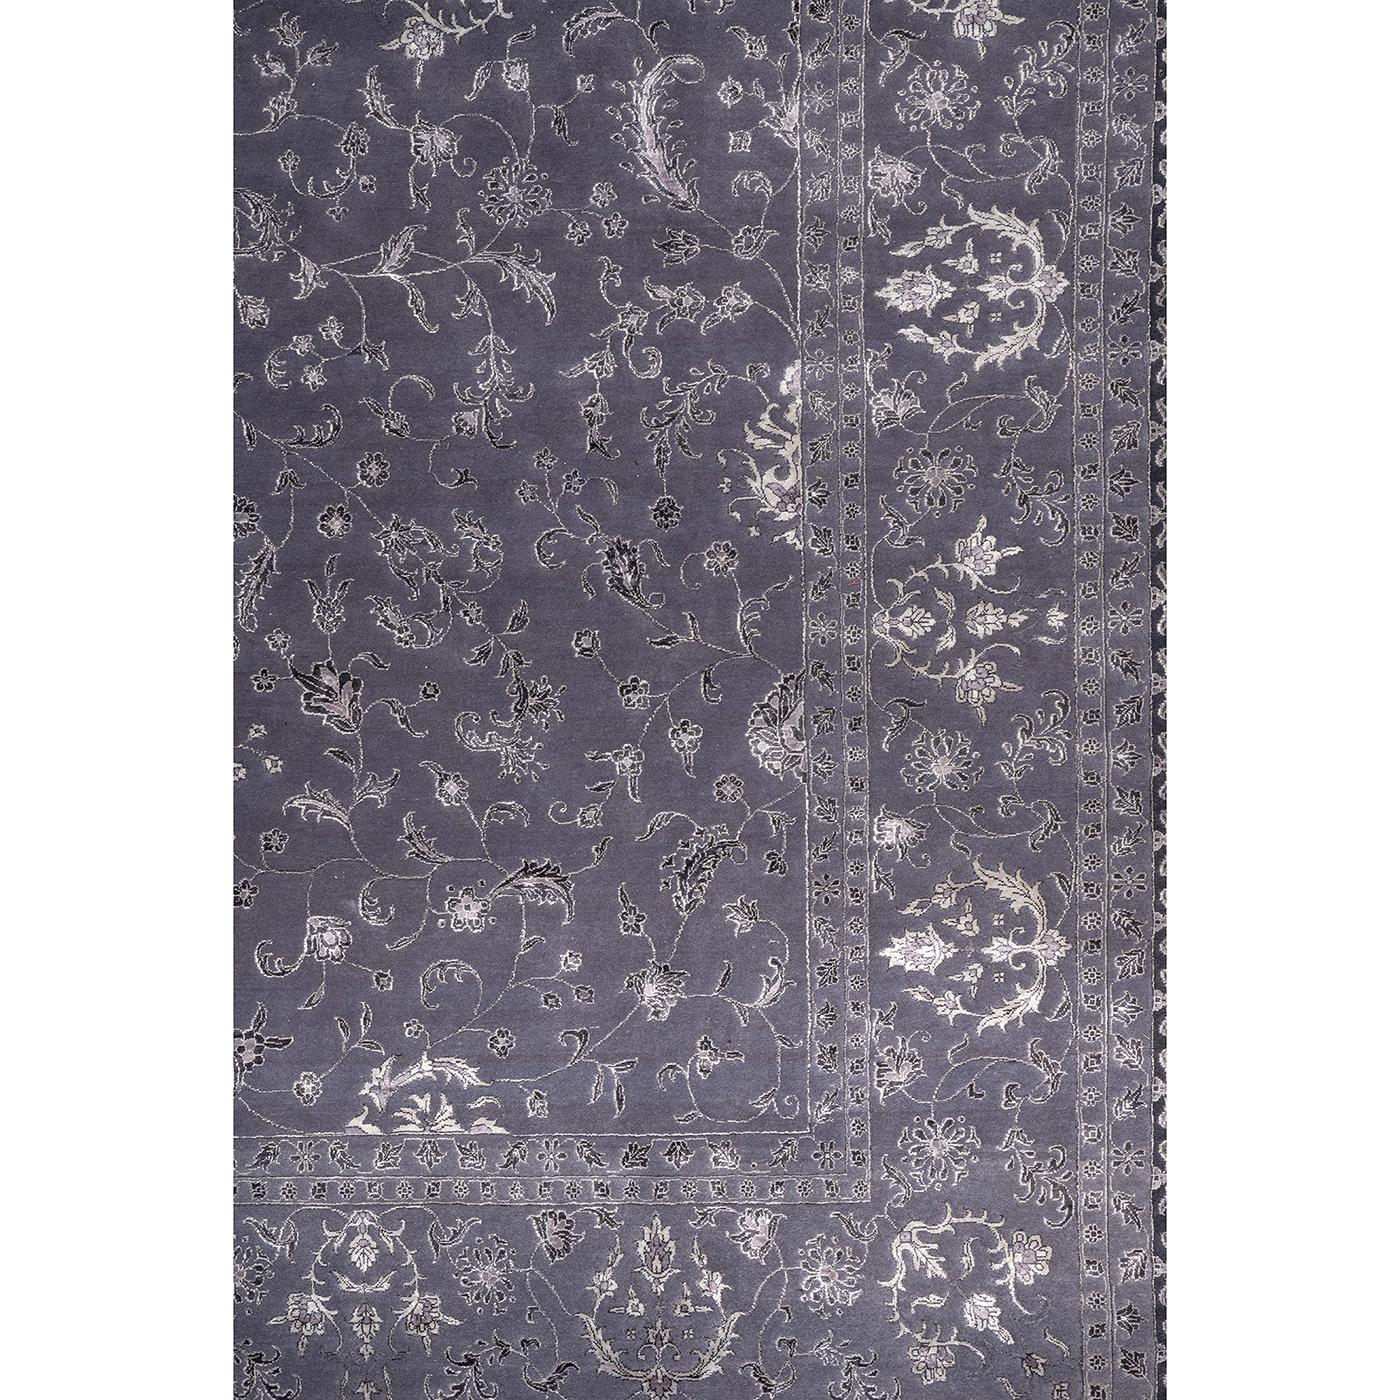 Ce tapis majestueux est tissé à la main en Inde avec de la laine extra fine de Nouvelle-Zélande et de la viscose, selon la technique traditionnelle des nœuds iraniens (600 nœuds par mètre carré). Une pièce superbe qui rehaussera le style de